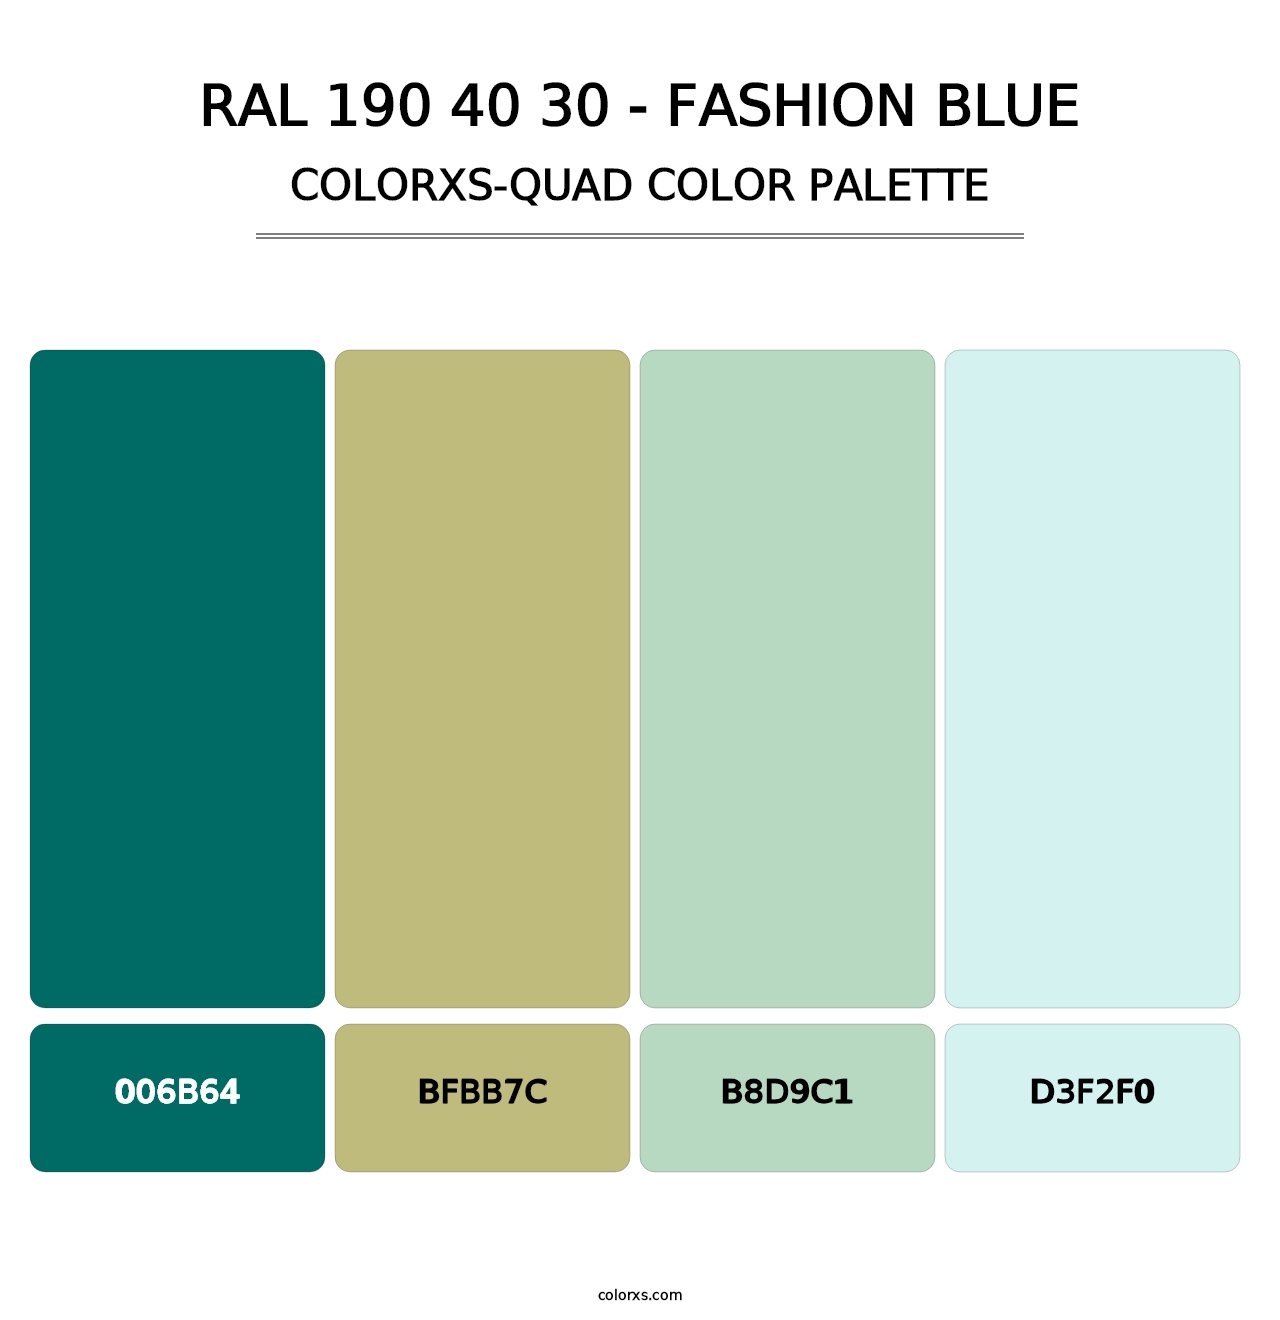 RAL 190 40 30 - Fashion Blue - Colorxs Quad Palette